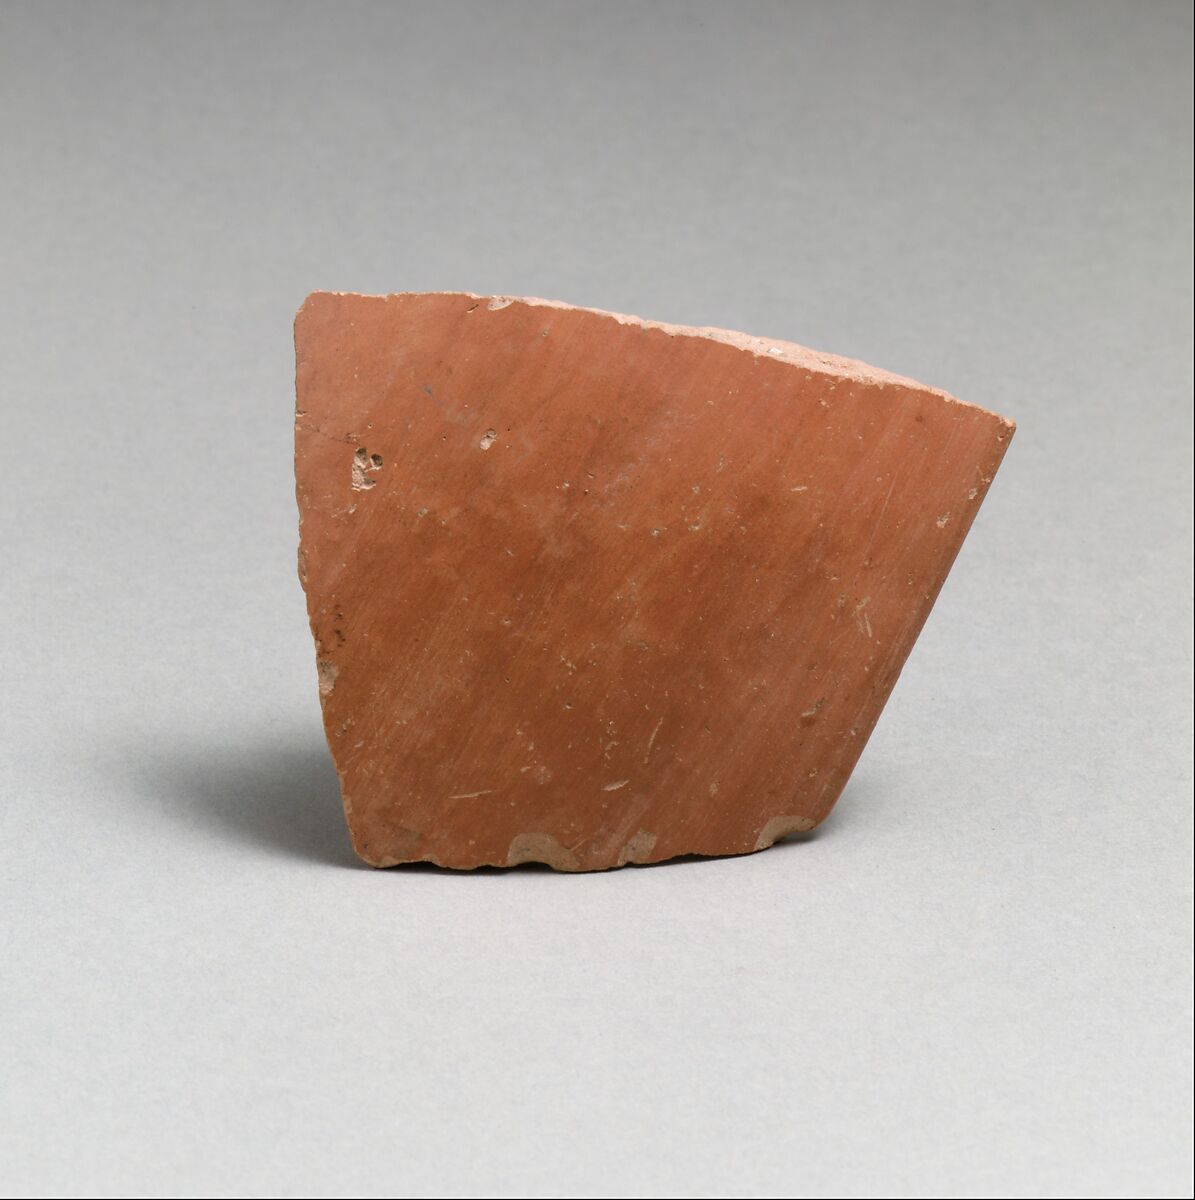 Vase fragment, Terracotta, Neolithic, Nemea 